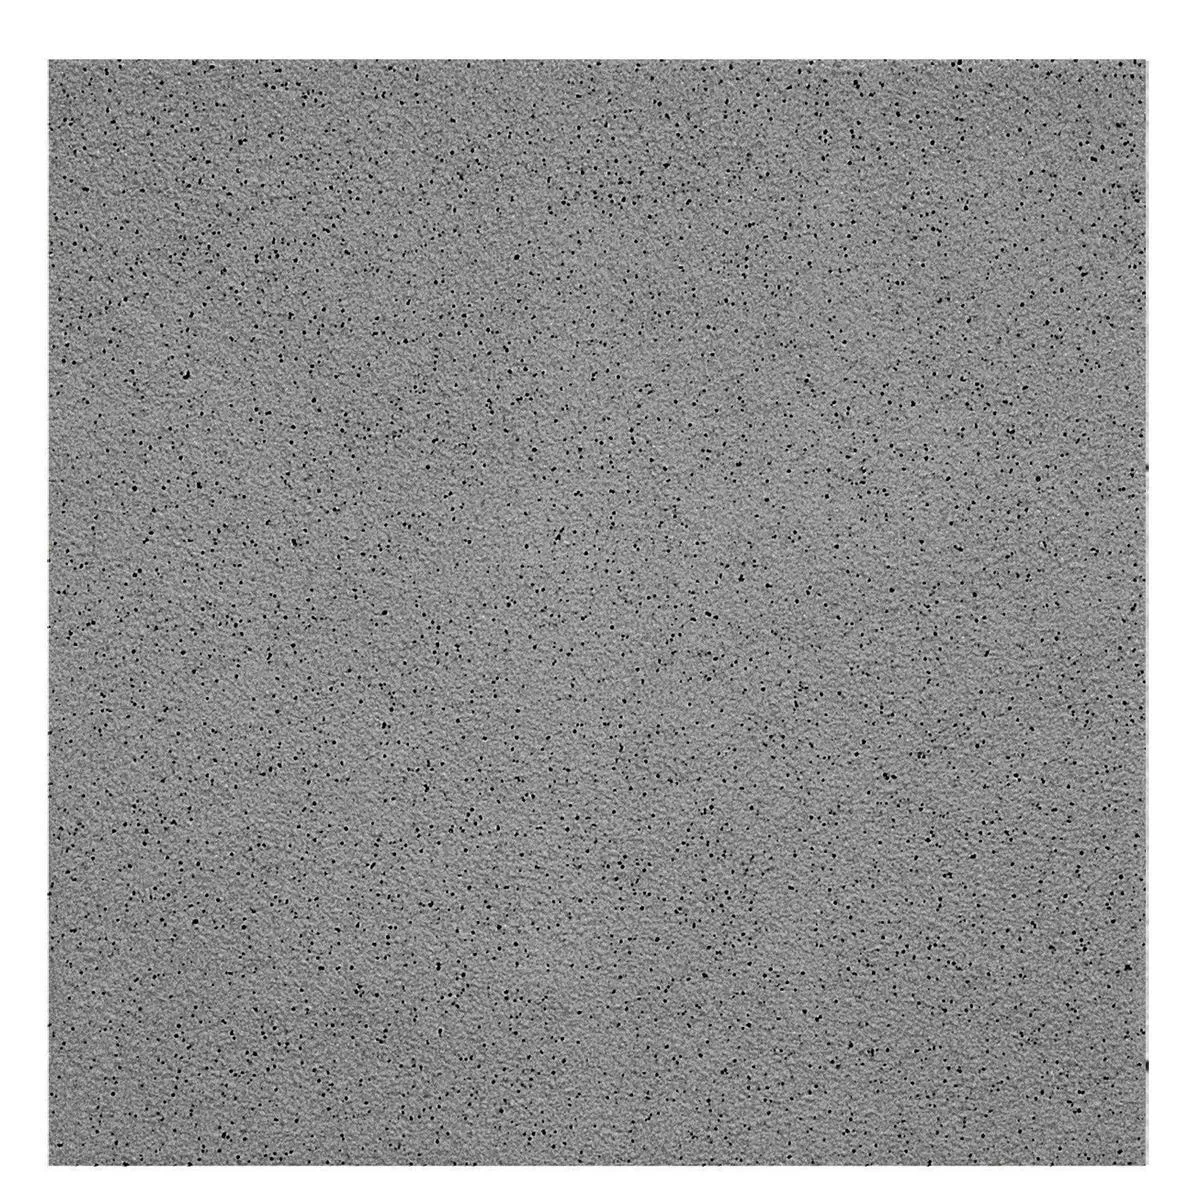 Πρότυπο Πλακάκι Δαπέδου Ψιλό Σιτάρι R10/A Ανθρακίτης 15x15cm